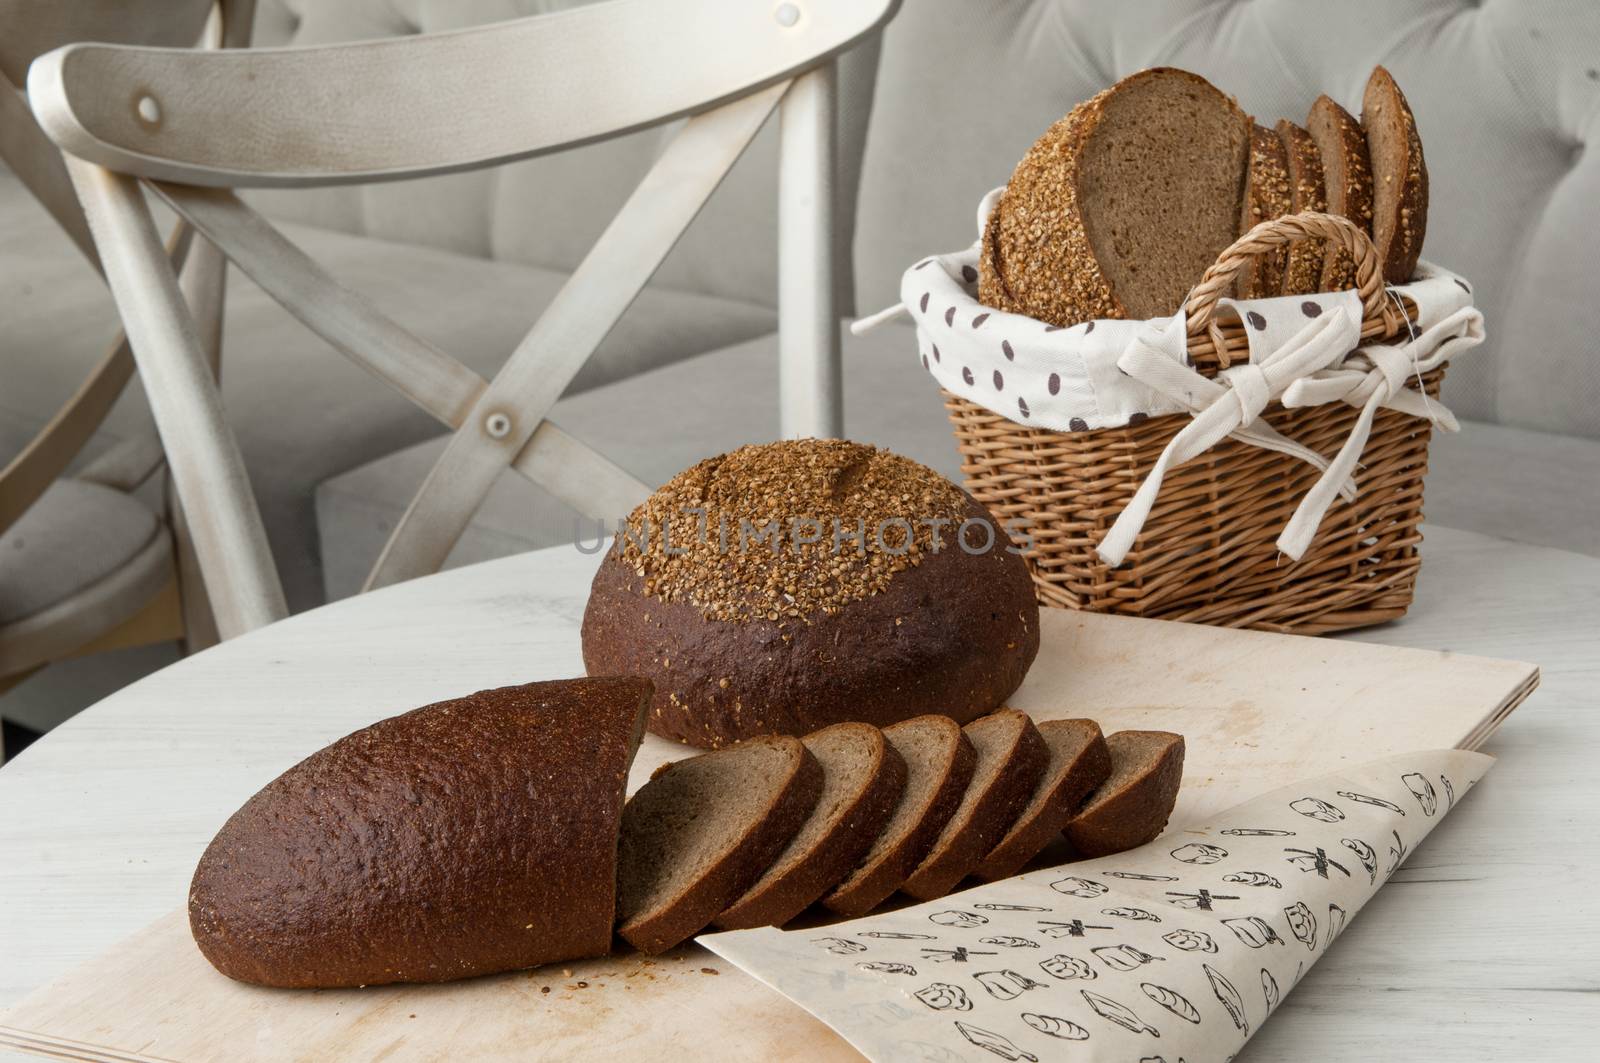 bread in a wicker basket by A_Karim